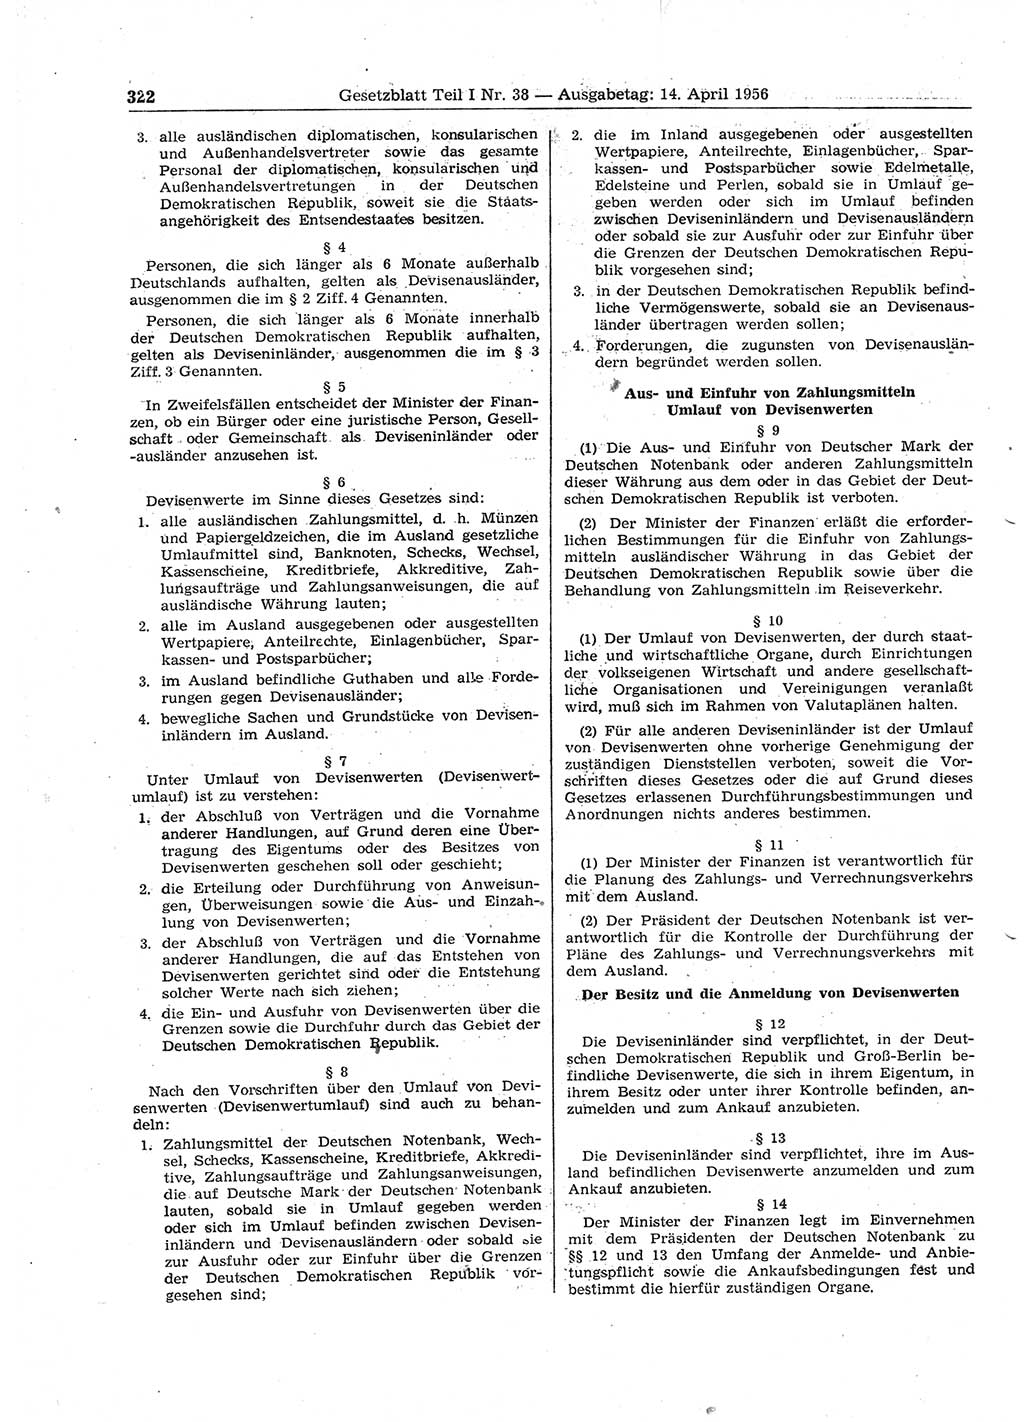 Gesetzblatt (GBl.) der Deutschen Demokratischen Republik (DDR) Teil Ⅰ 1956, Seite 322 (GBl. DDR Ⅰ 1956, S. 322)